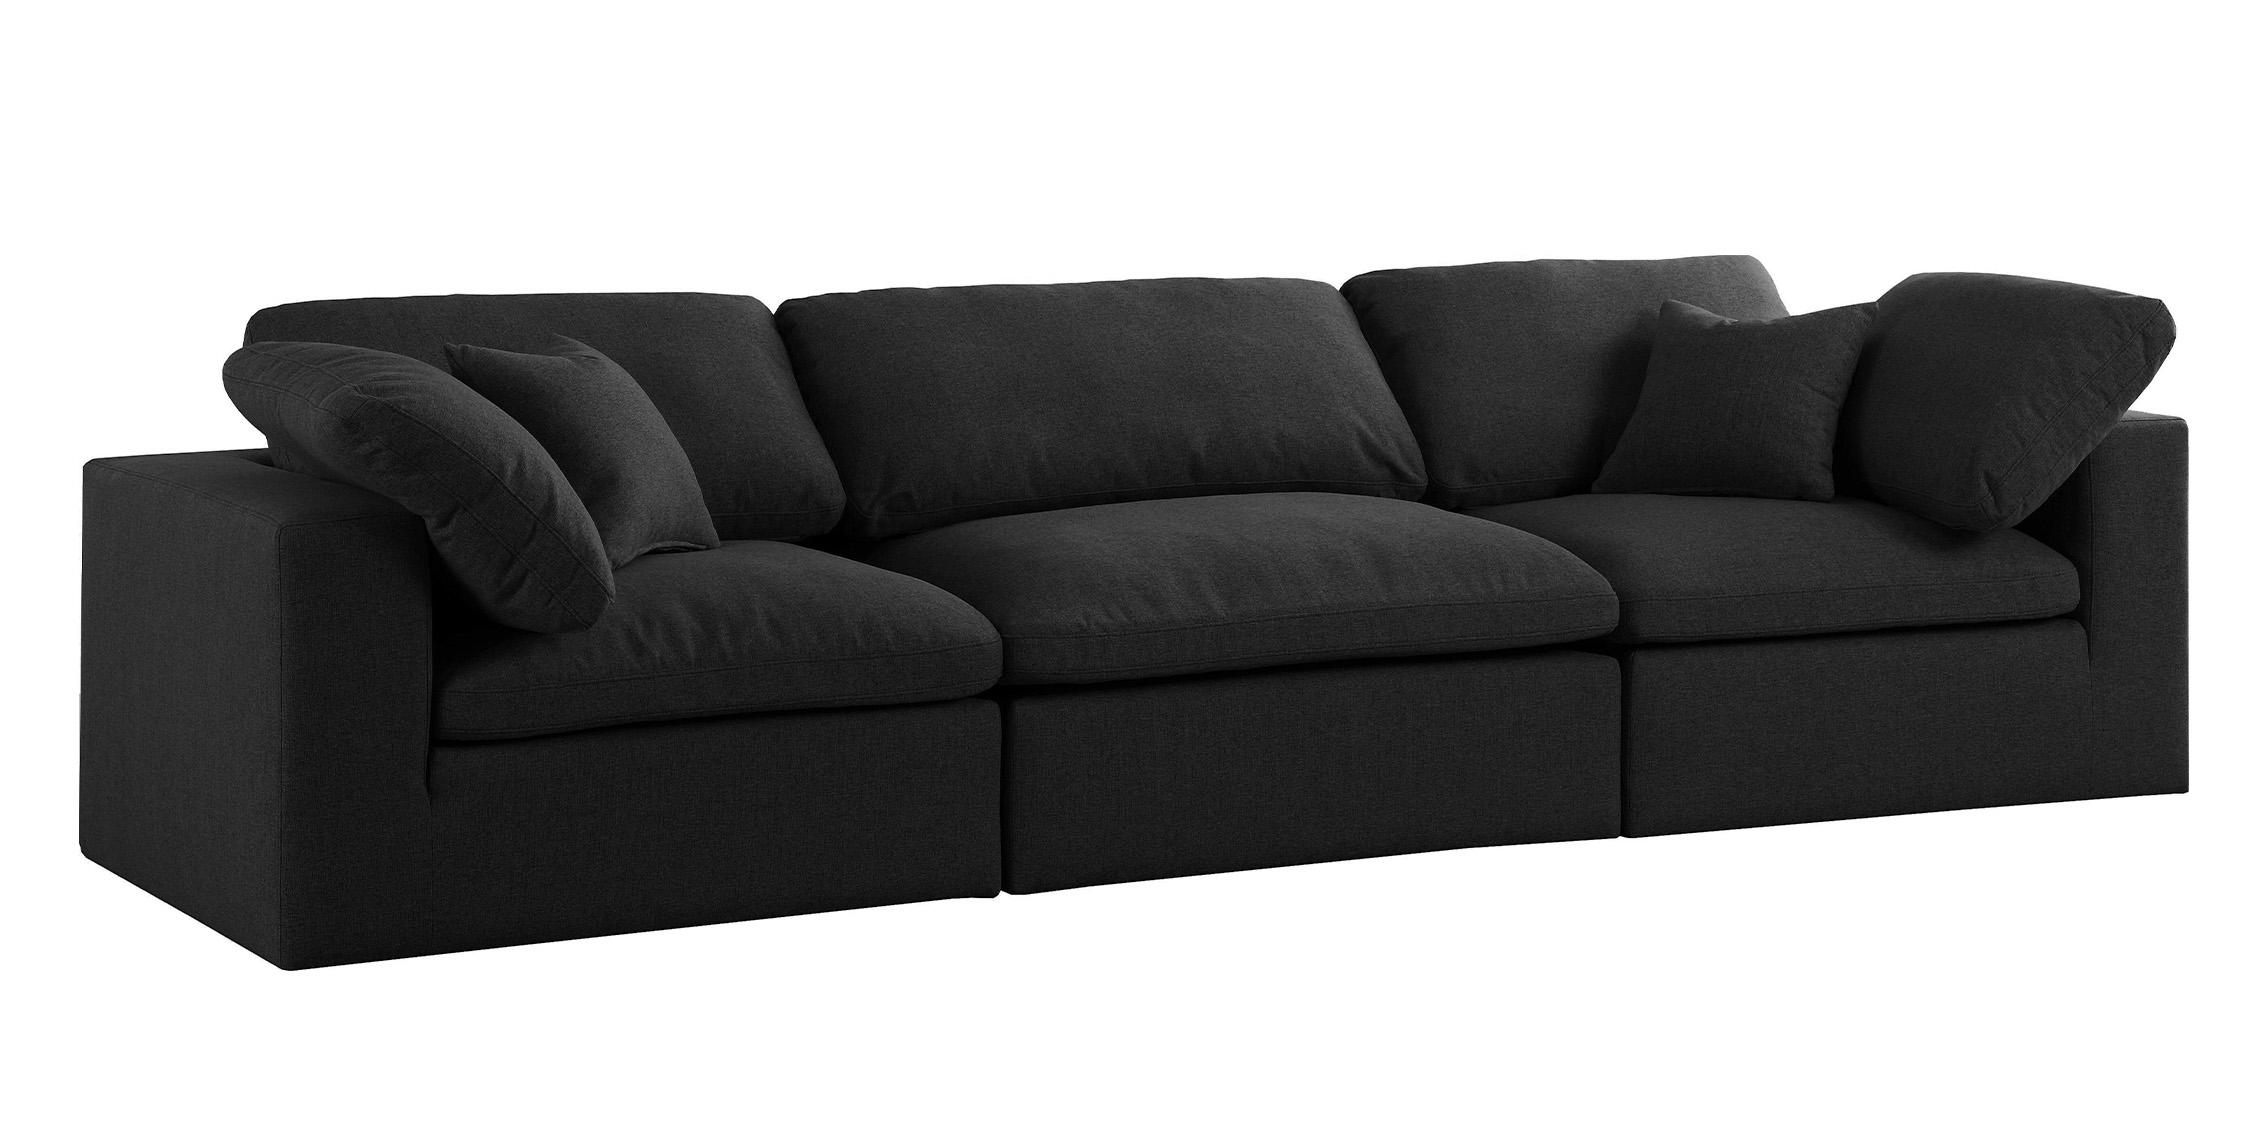 

    
Serene Black Linen Textured Fabric Deluxe Comfort Modular Sofa S119 Meridian
